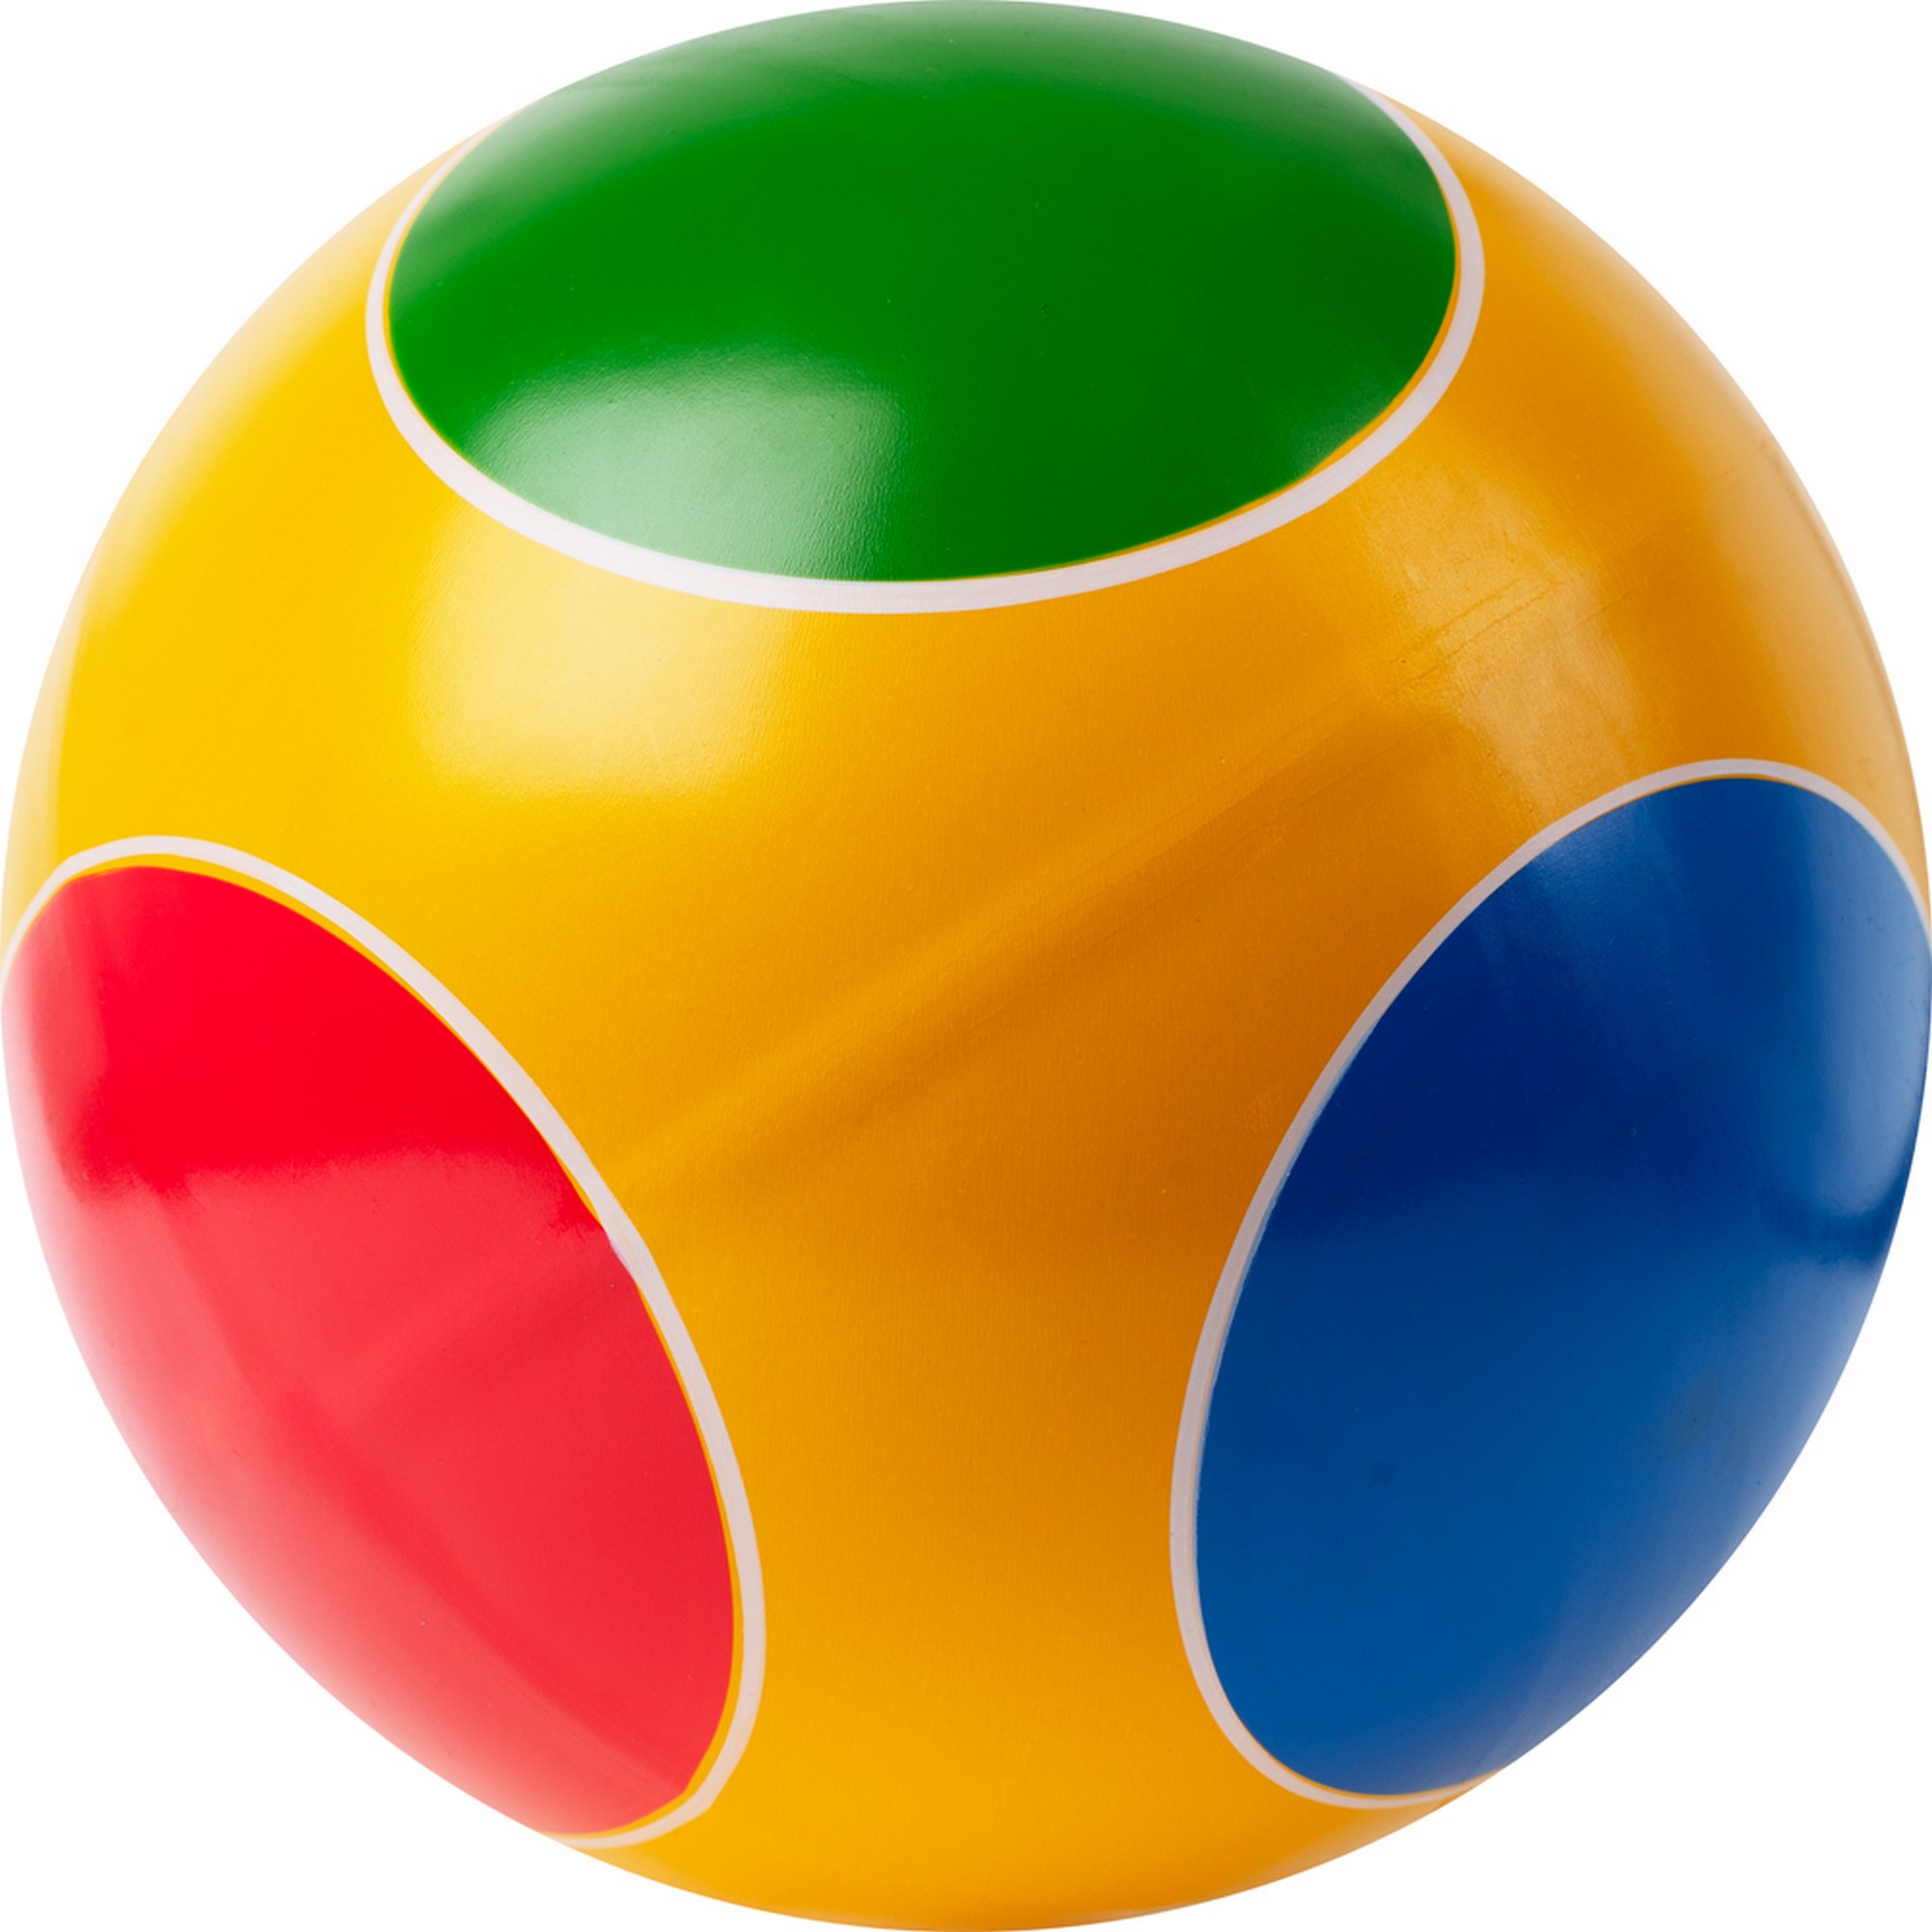 Мяч детский Кружочки ручное окрашивание, d20см, резина Р3-200-Кр мультиколор - фото 1